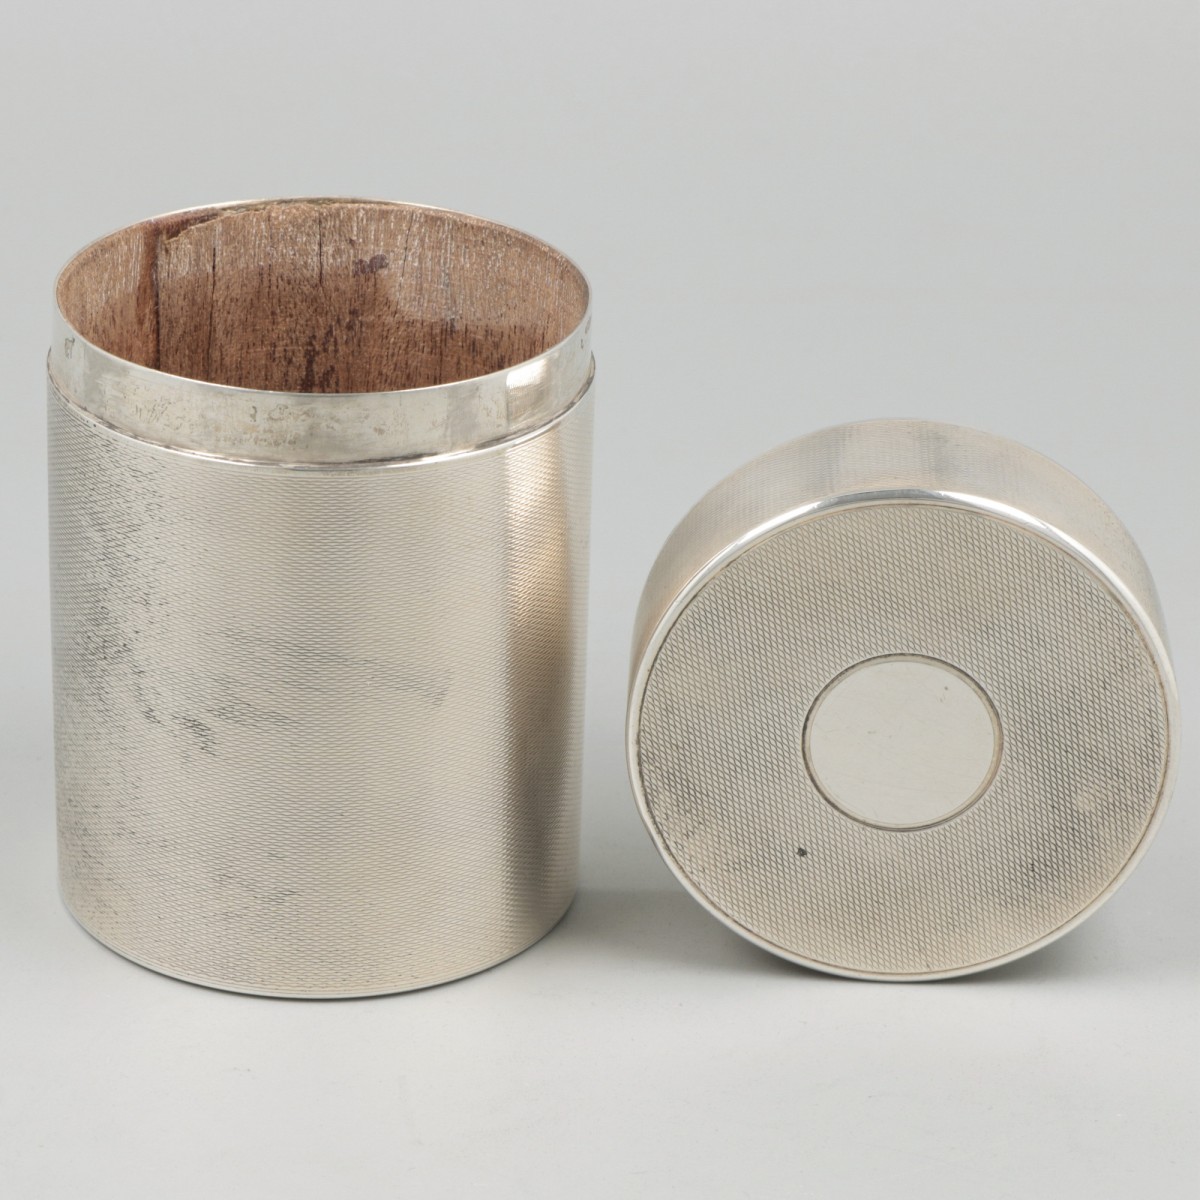 Cigarette / tobacco jar silver. - Image 2 of 6